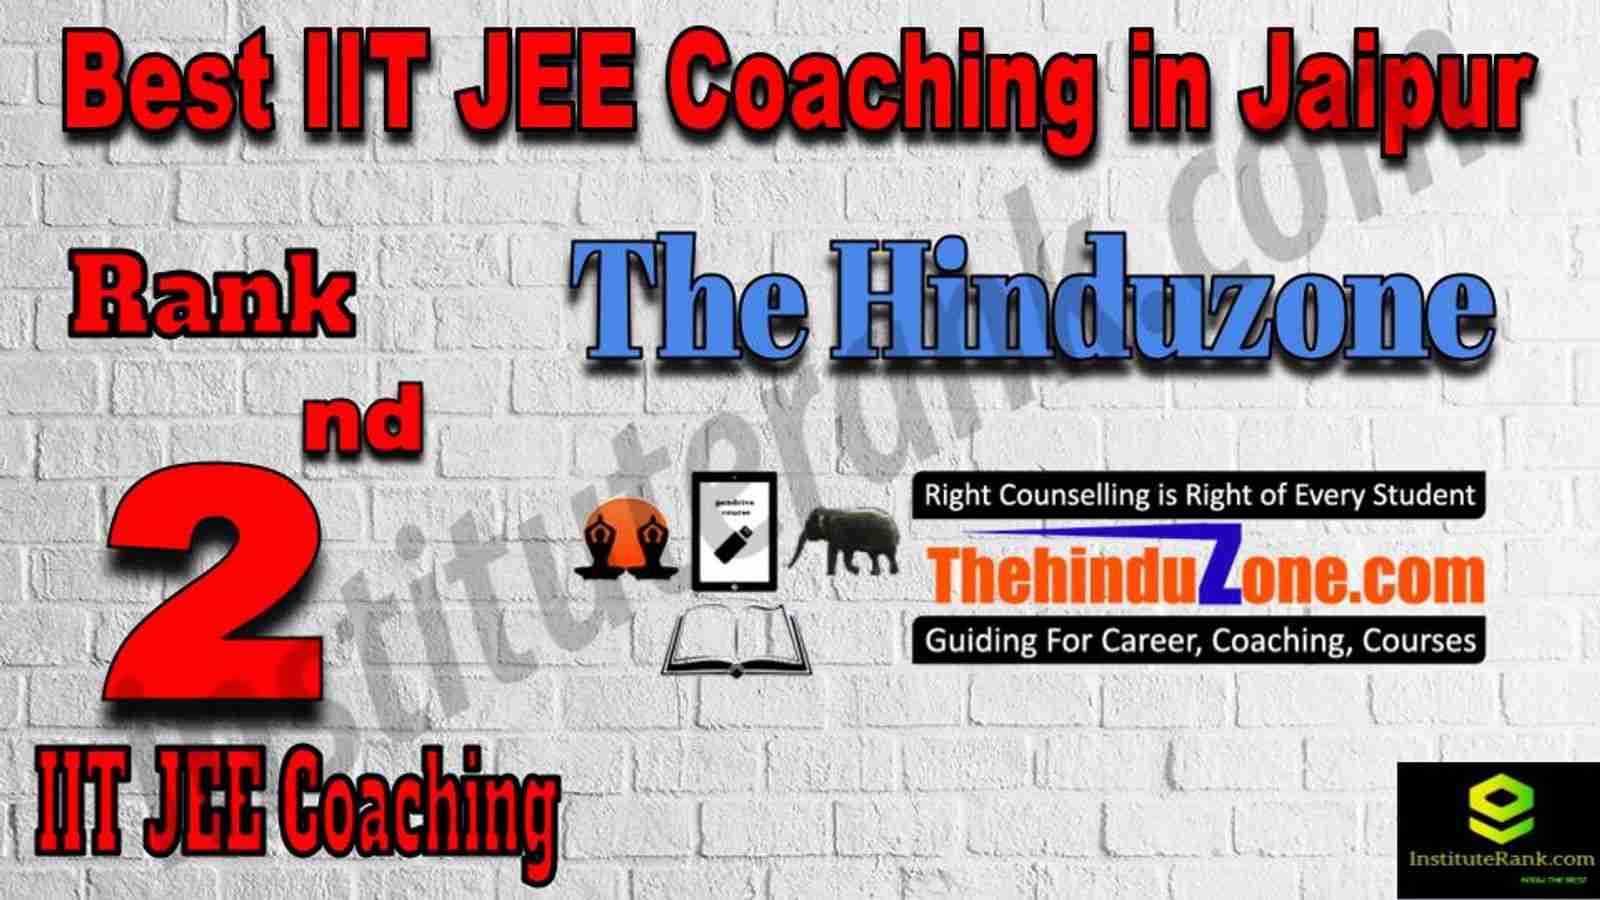 2nd Best IIT JEE Coaching in Jaipur